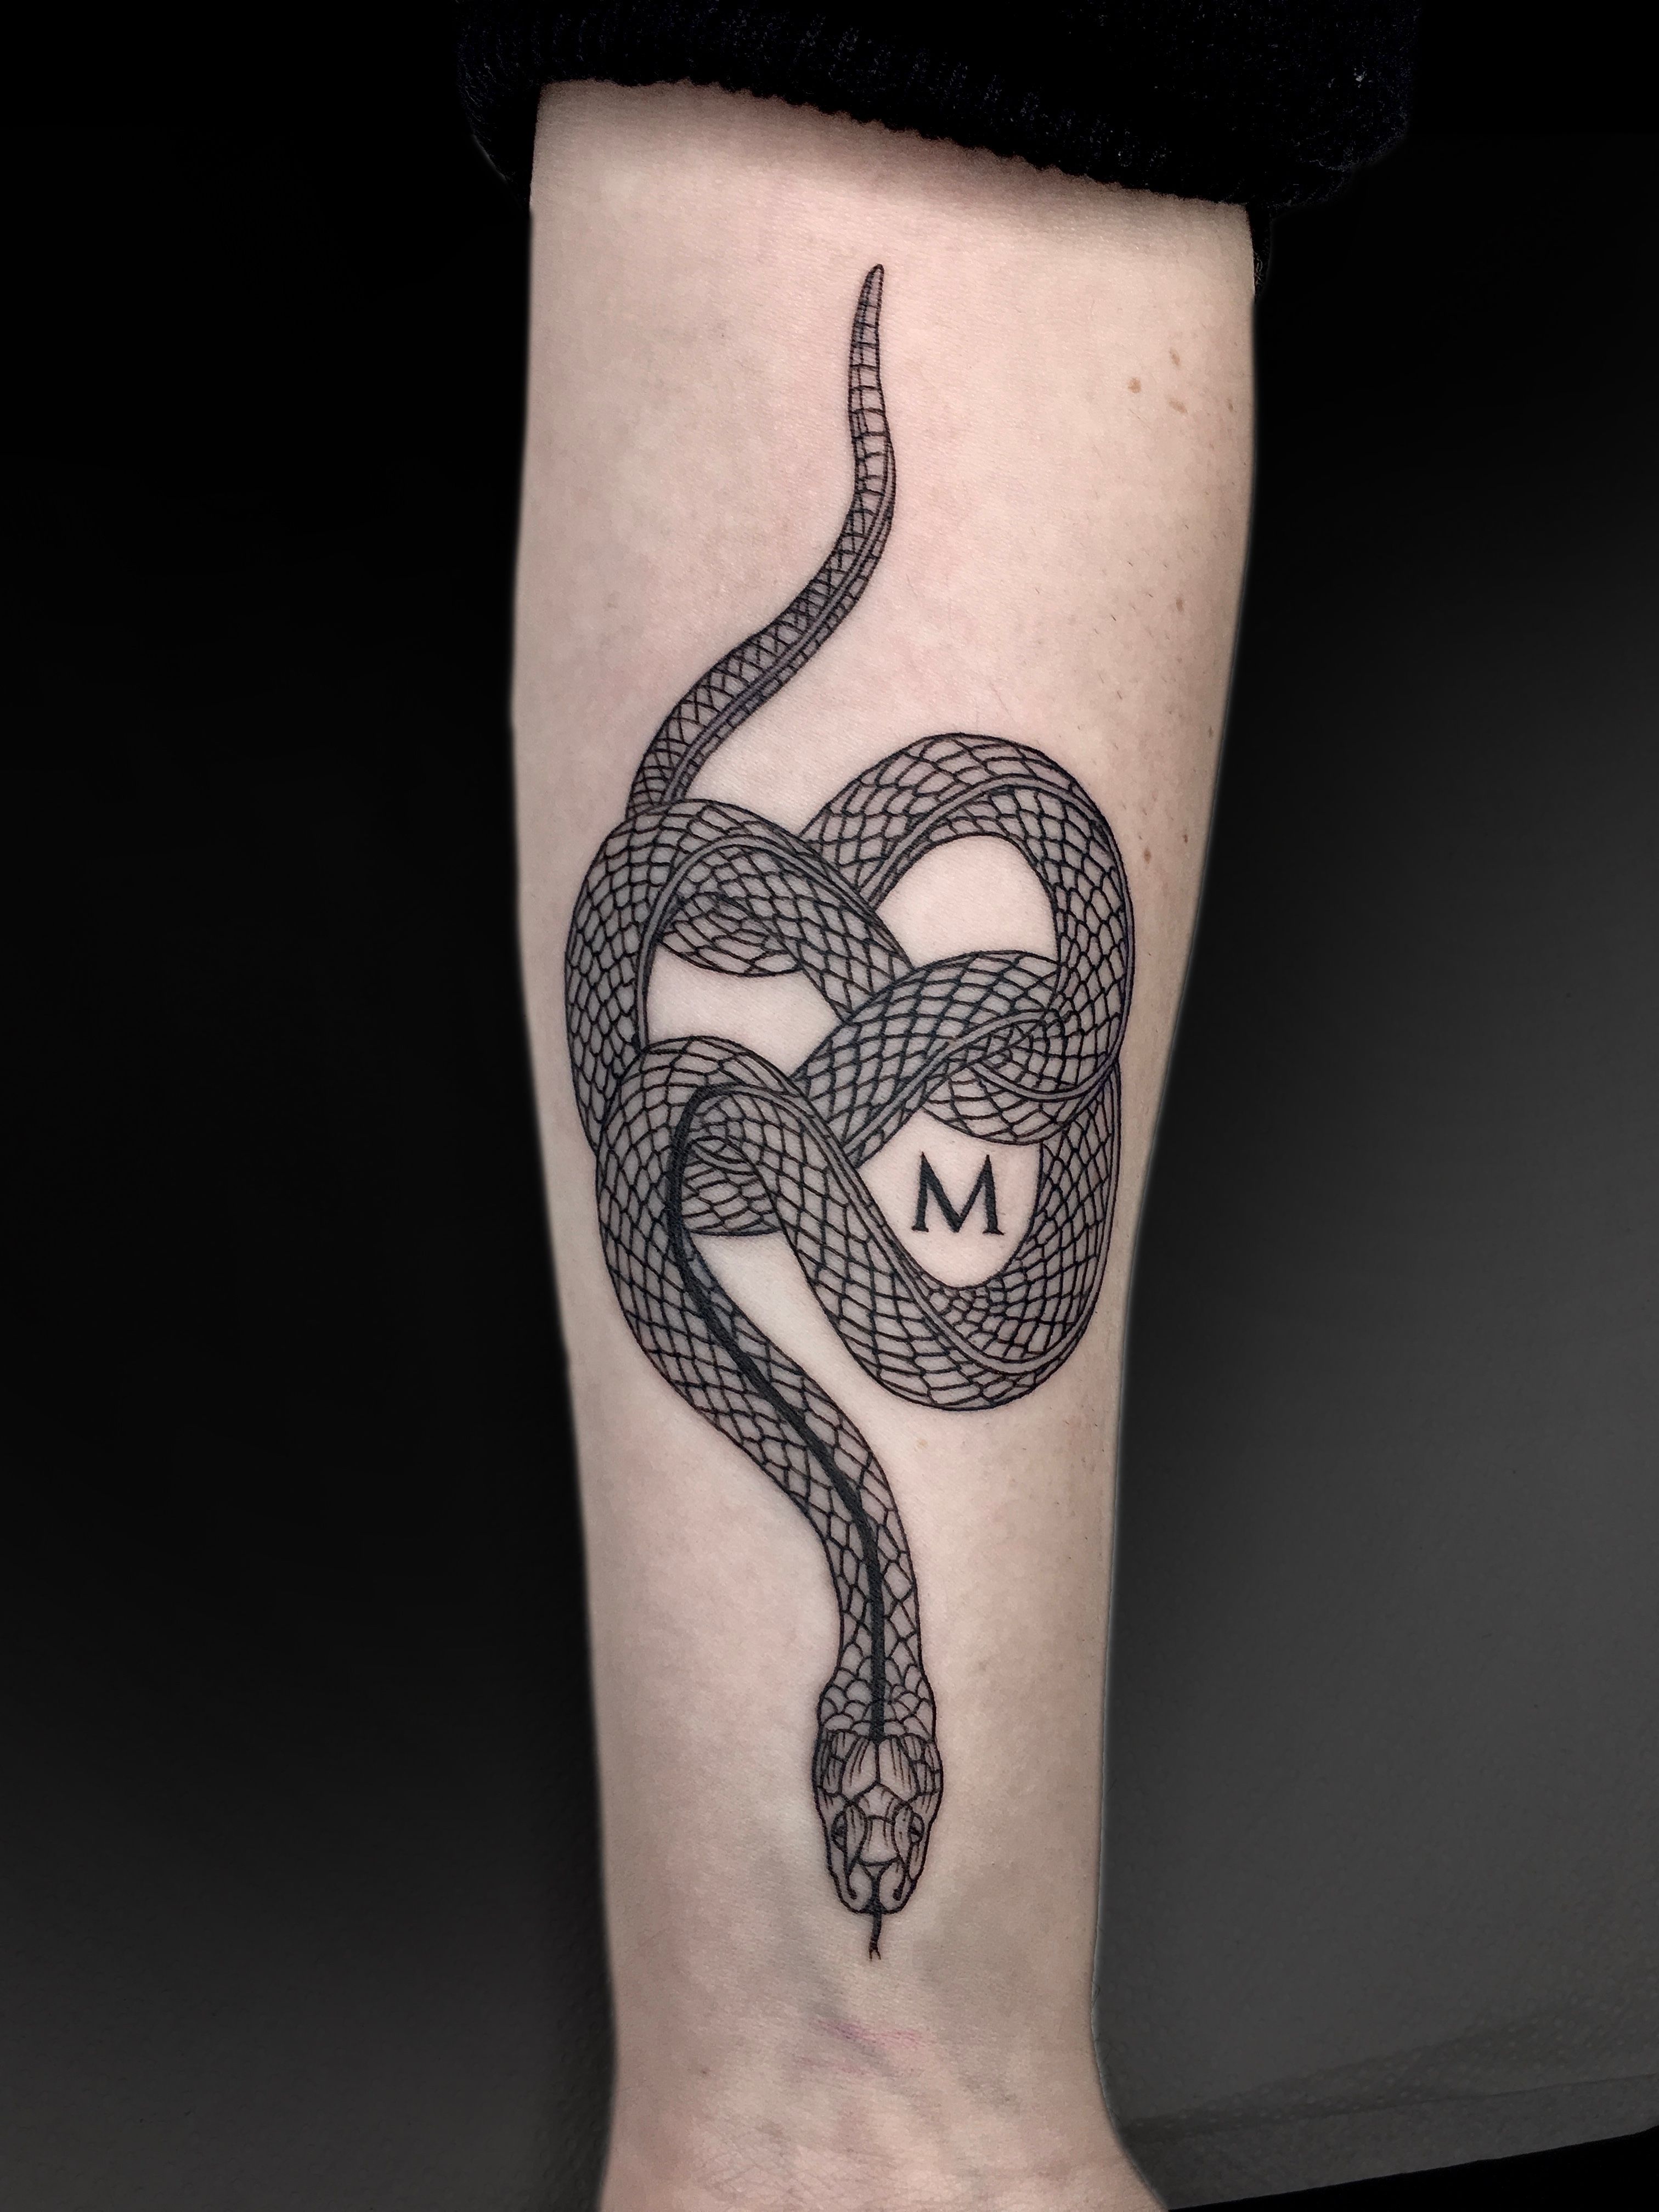 Tattoo uploaded by Swasthik Iyengar • Beautiful Shiva tattoo by Swasthik  Iyengar aka Gunga Ma #SwasthikIyengar #GungaMa #color #traditional #Hindu  #sacredsymbols #sacrediconography #shiva #moon #trident #snake #ganges  #thirdeye • Tattoodo